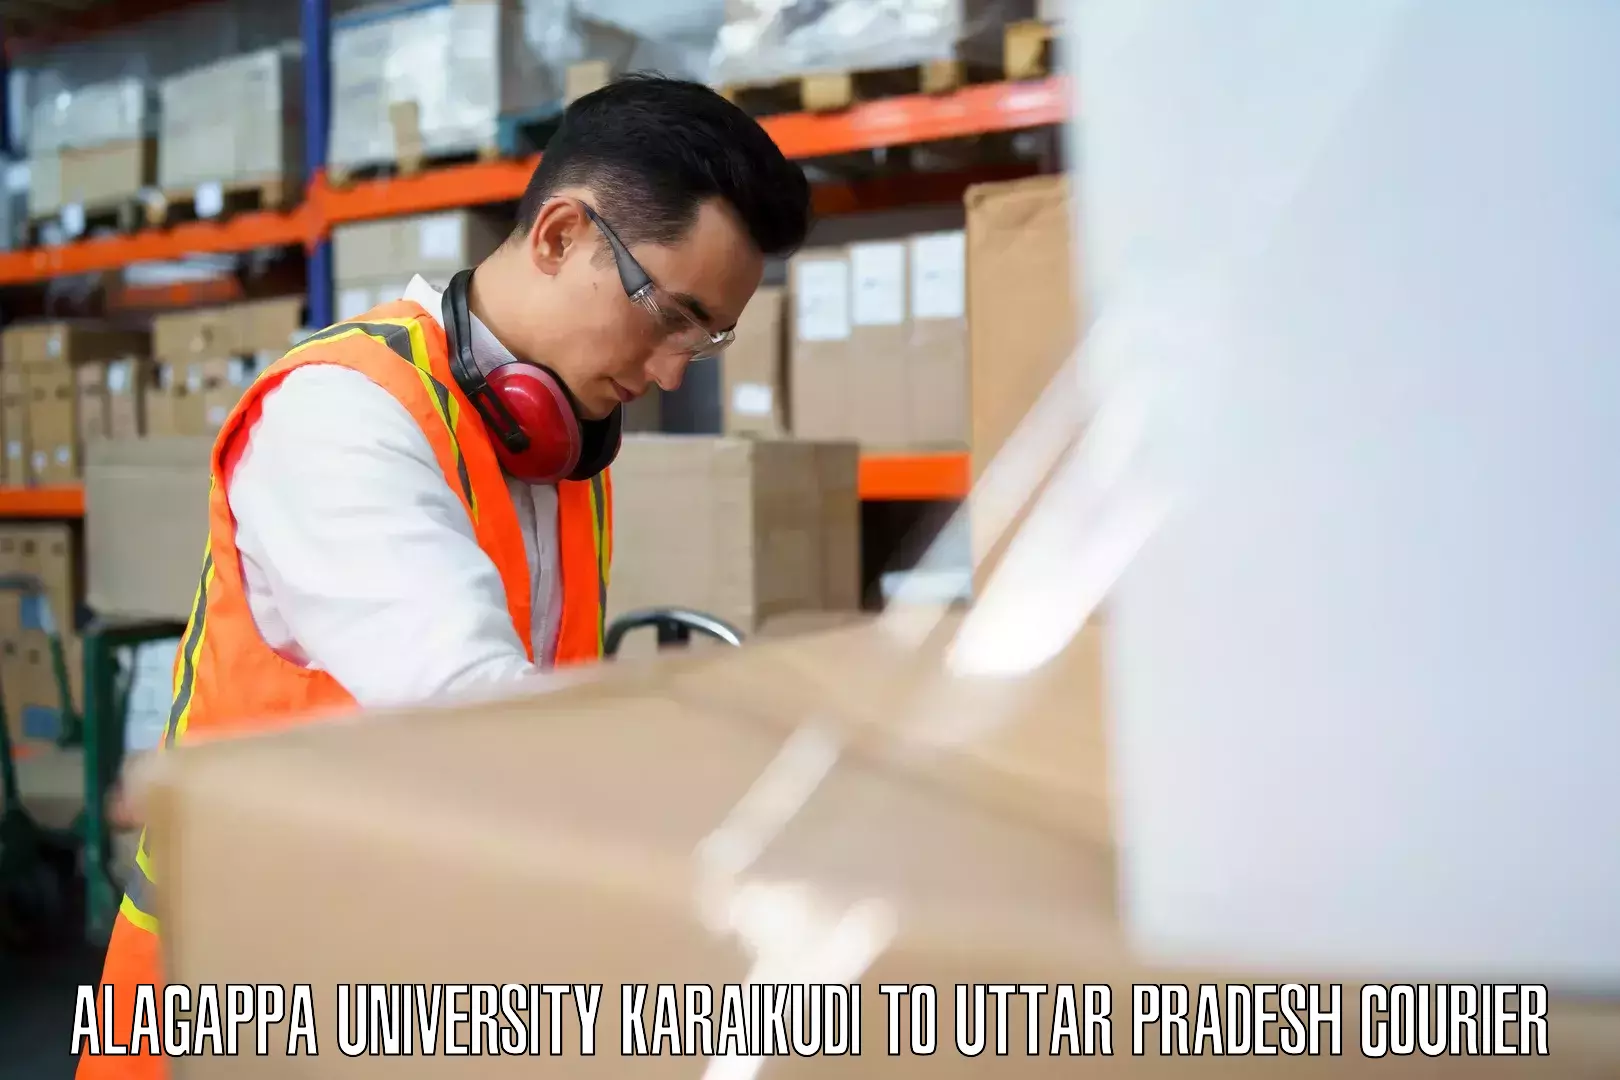 Baggage courier guide Alagappa University Karaikudi to Kaptanganj